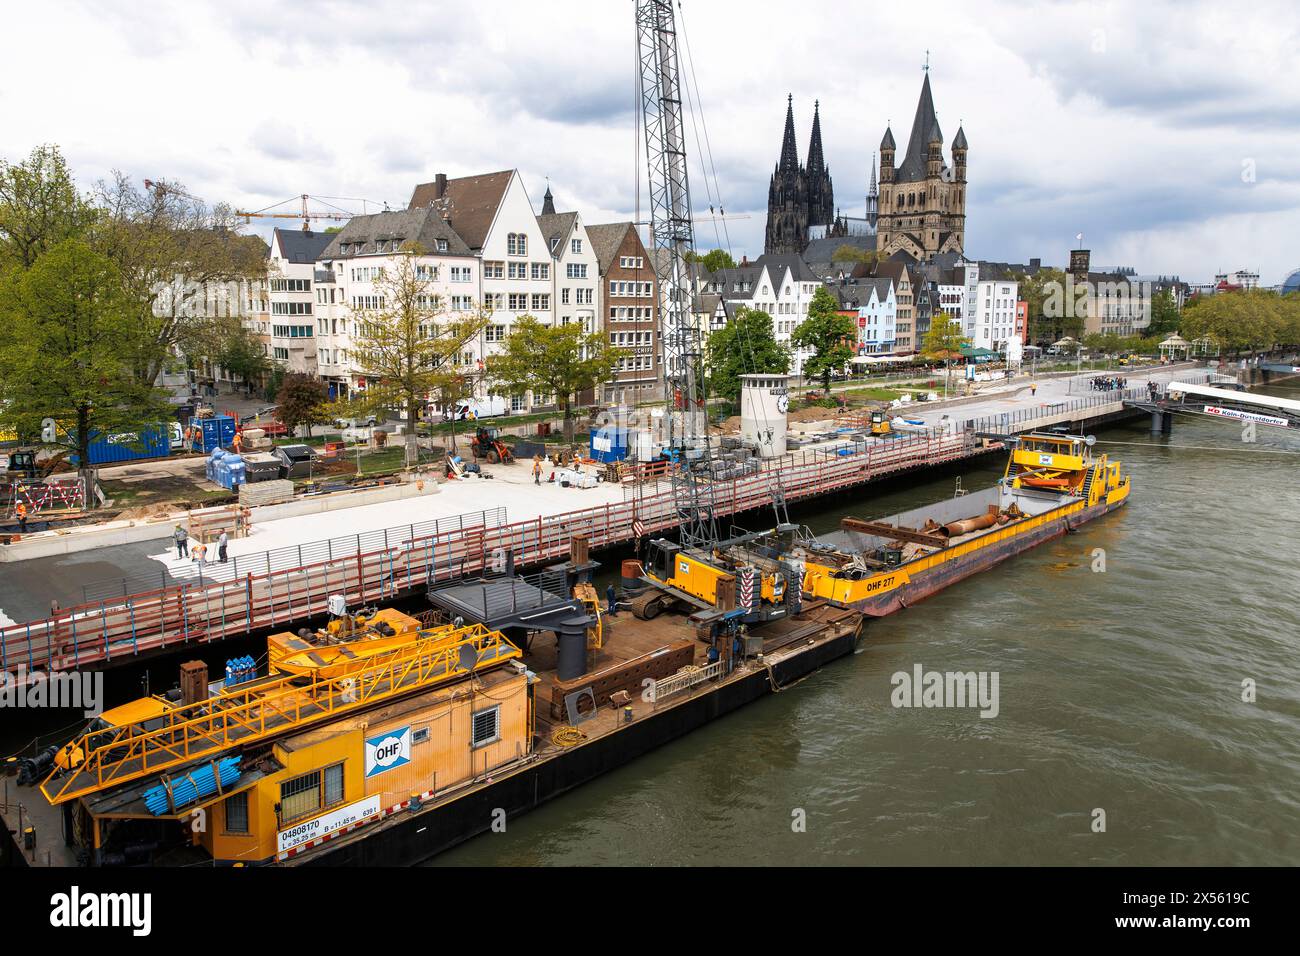 La promenade du Rhin en face de la vieille ville obtient une nouvelle dalle cantilever, chantier de construction, la cathédrale et l'église Gross St. Martin, Cologne, allemand Banque D'Images